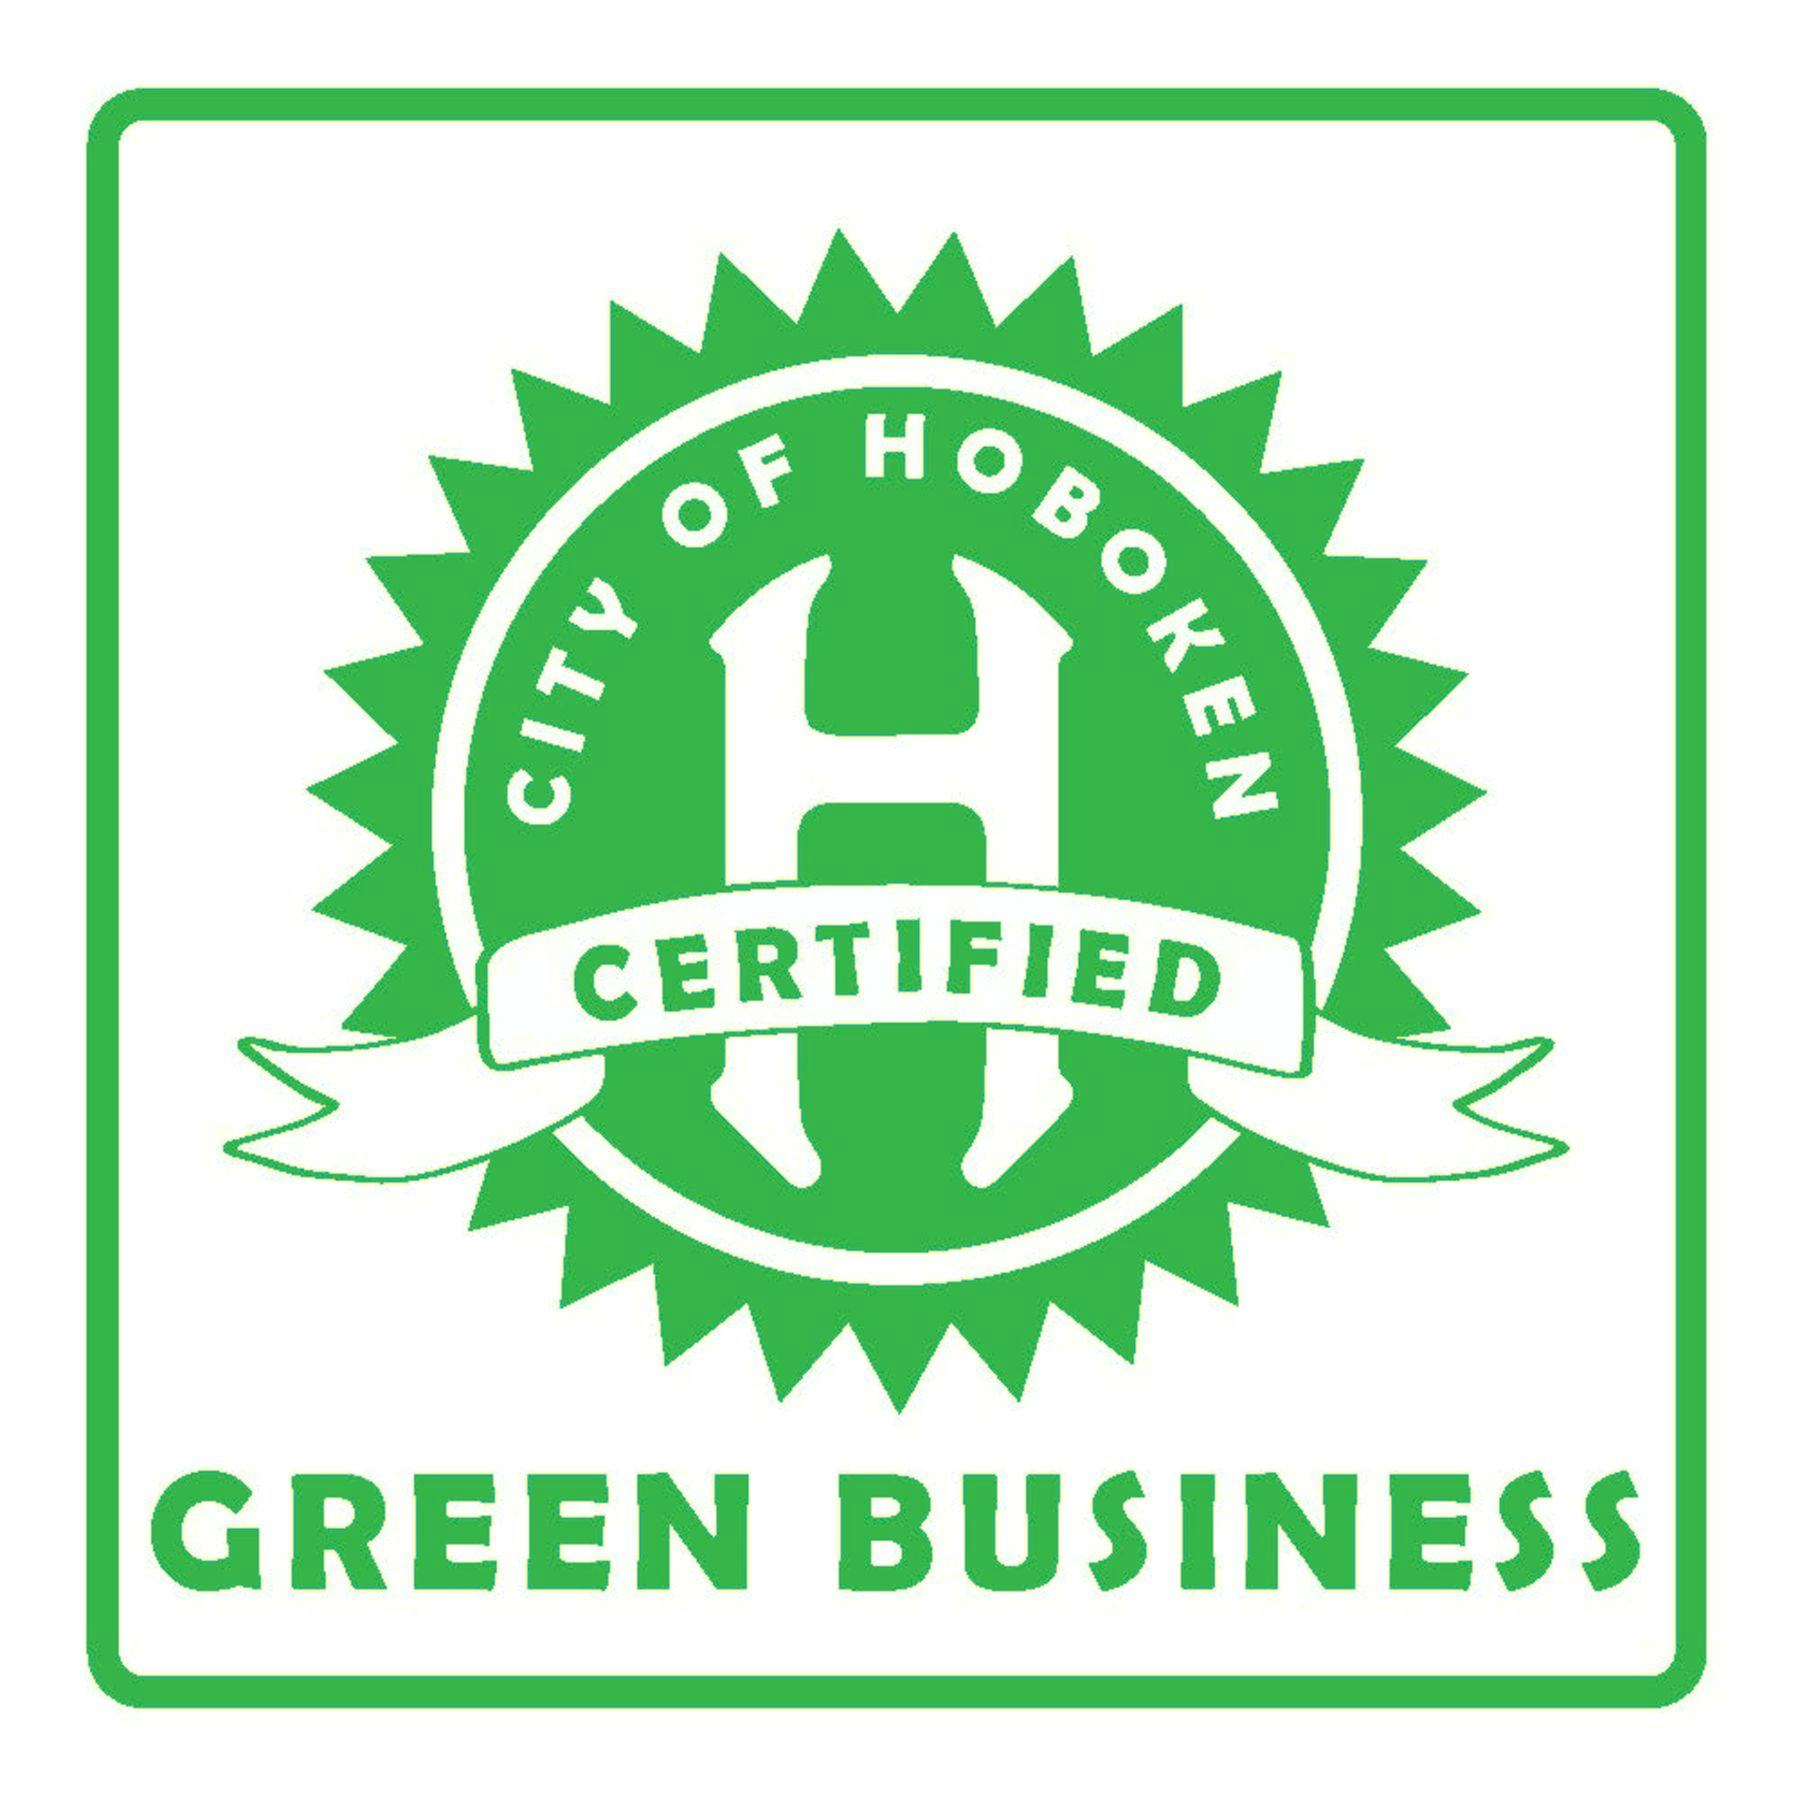 City of Hoboken Certified Green Business